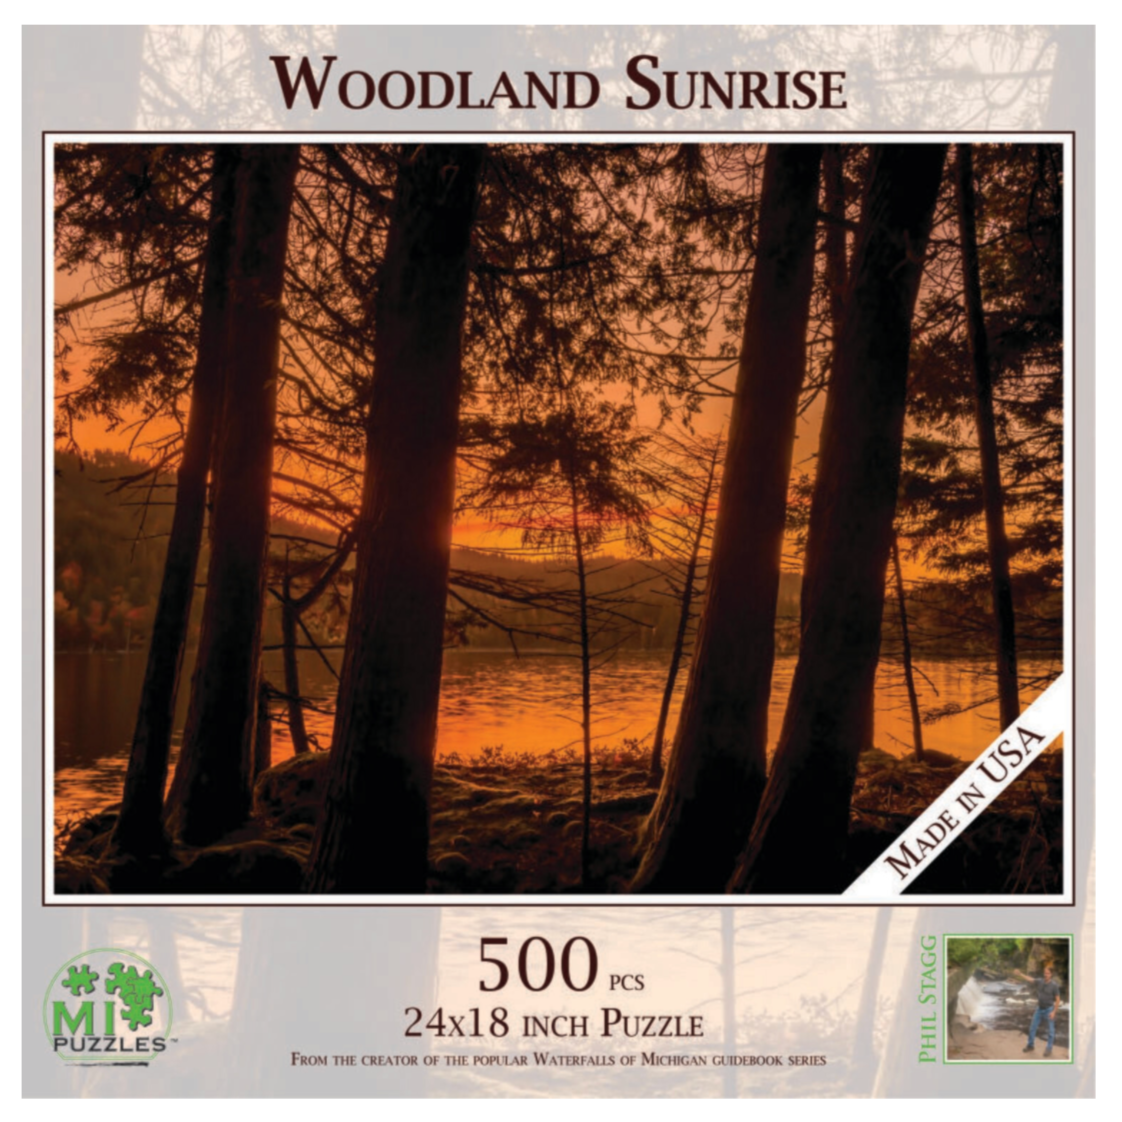 Woodland And Sunrise 500 pc Jigsaw Puzzle